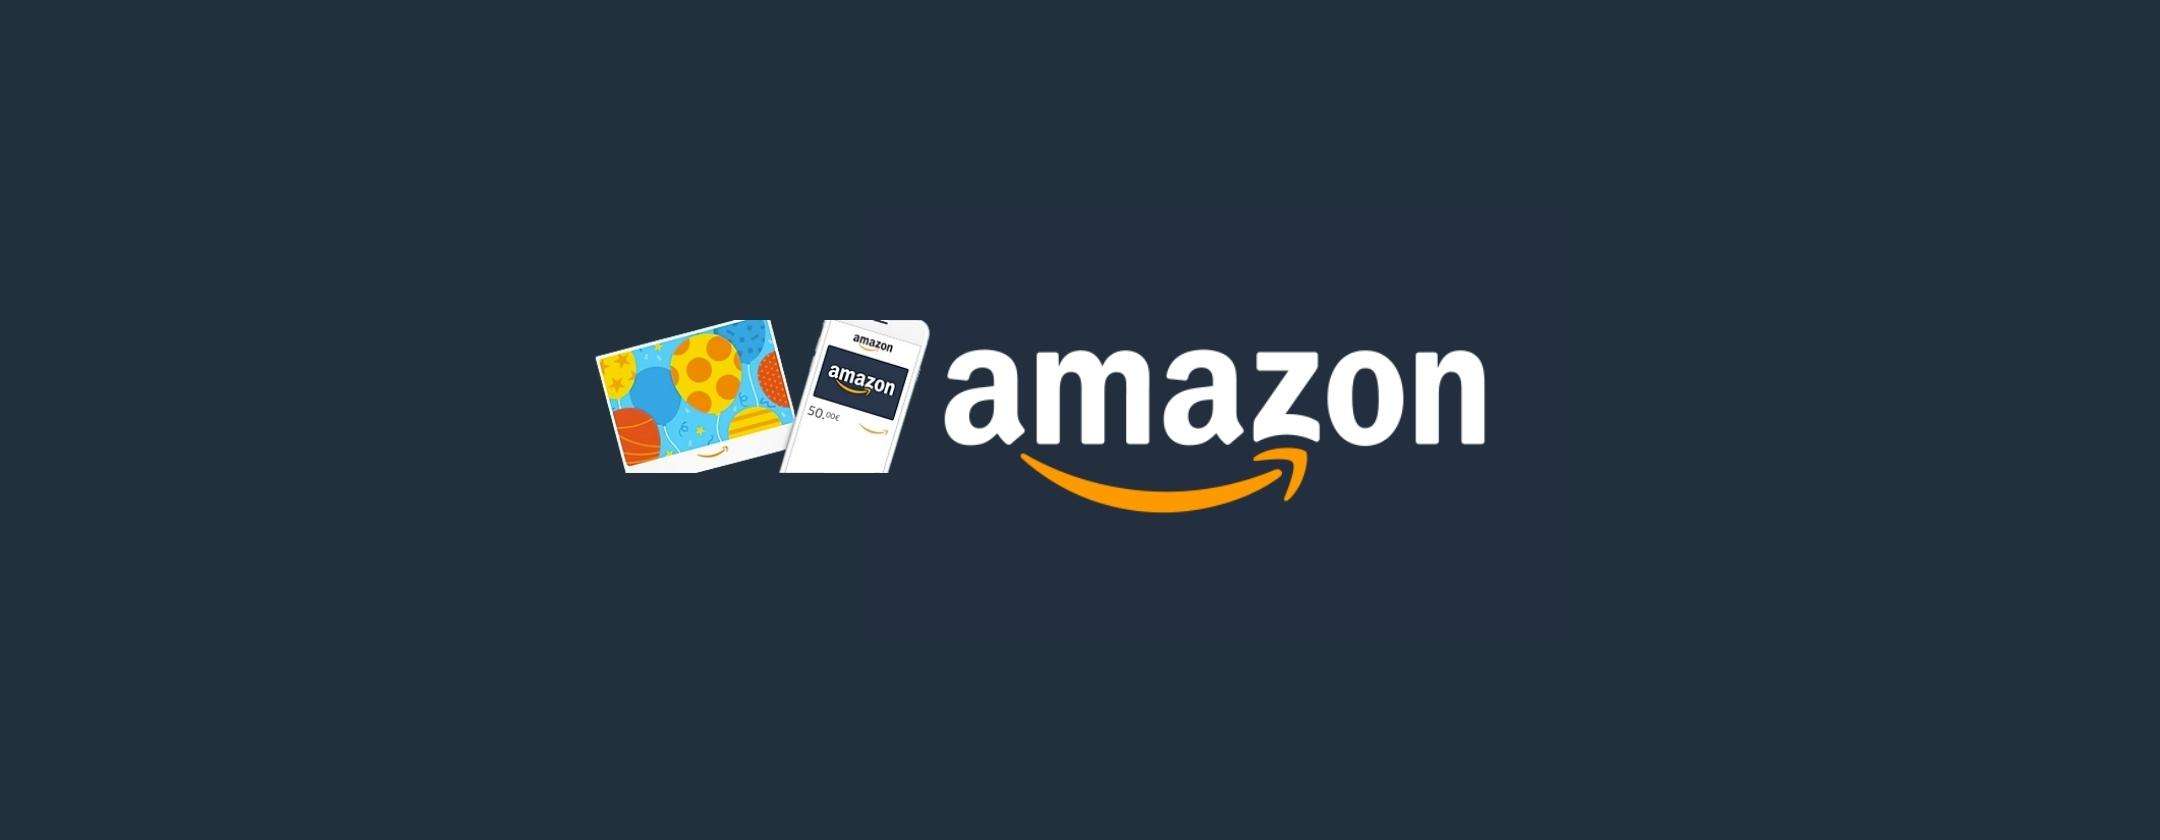 Come ottenere un buono Amazon da 200€ con SelfyConto